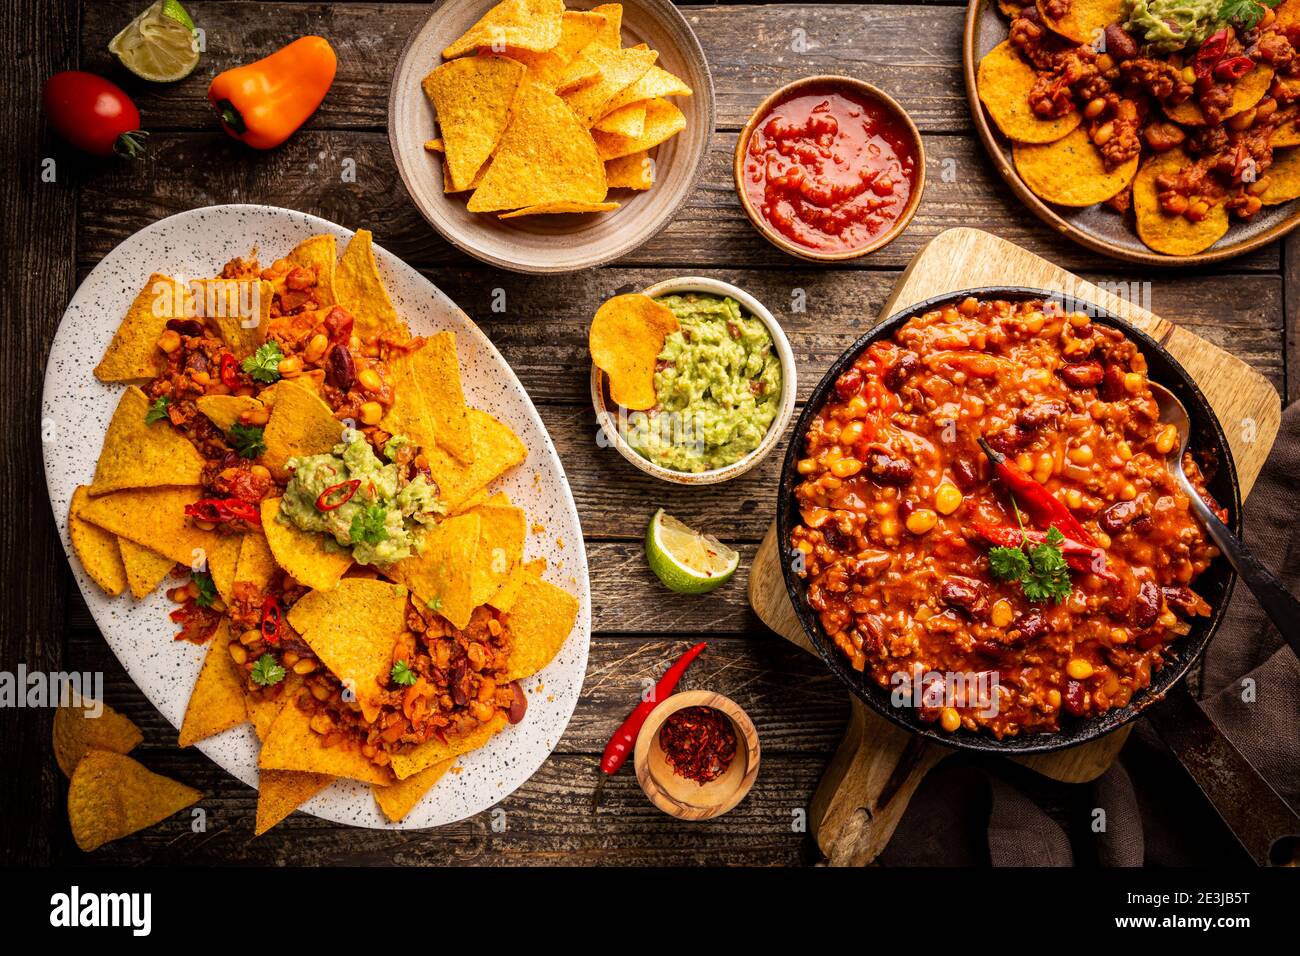 Mexikanisches Food-Konzept: Tortilla Chips, Guacamole, Salsa, Chili con Carne und frische Zutaten auf Holzhintergrund, Draufsicht Stockfoto